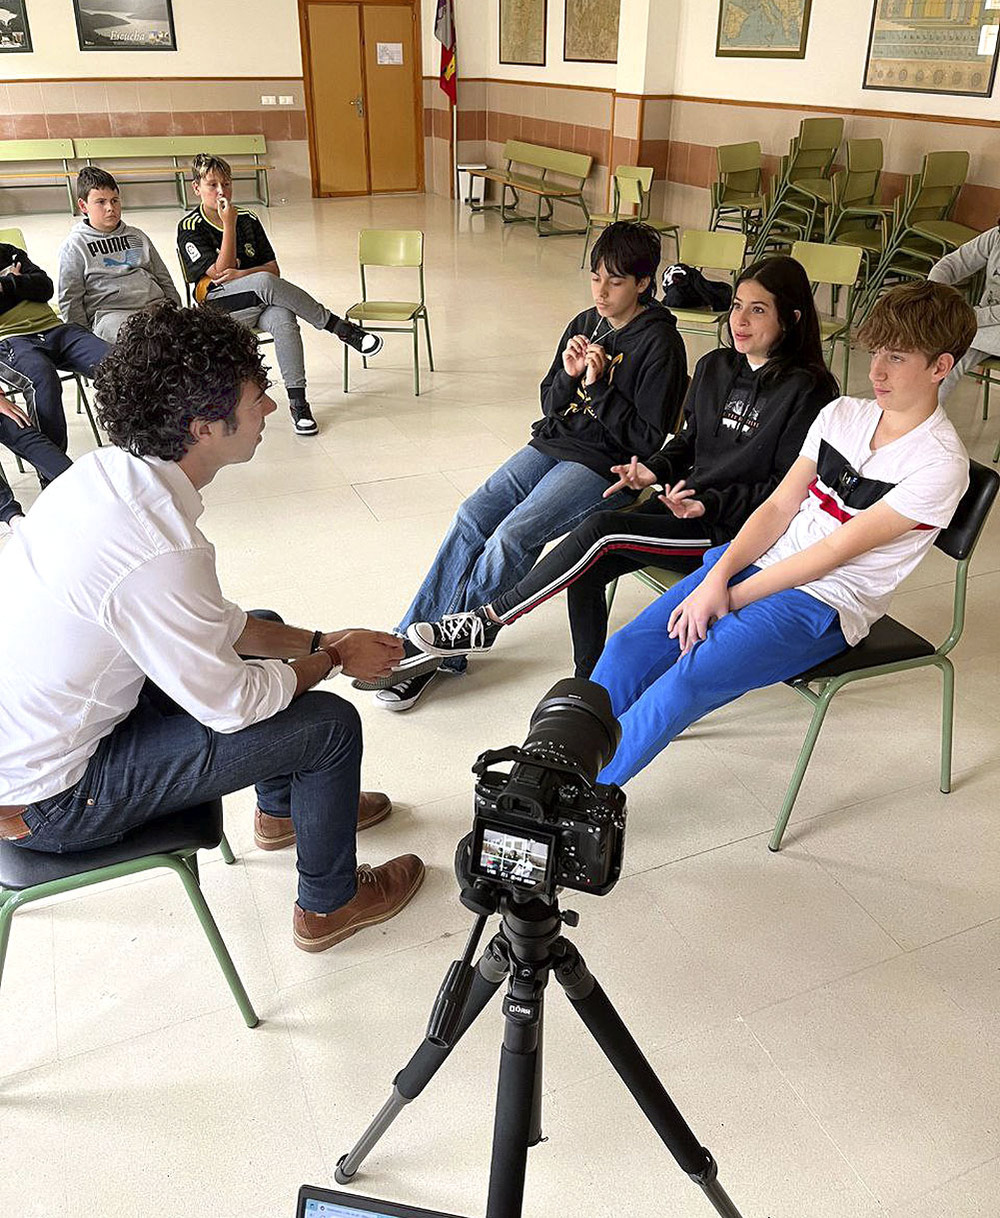 El director del corto, Albert Cervera, ha tenido una primera toma de contacto con los alumnos.